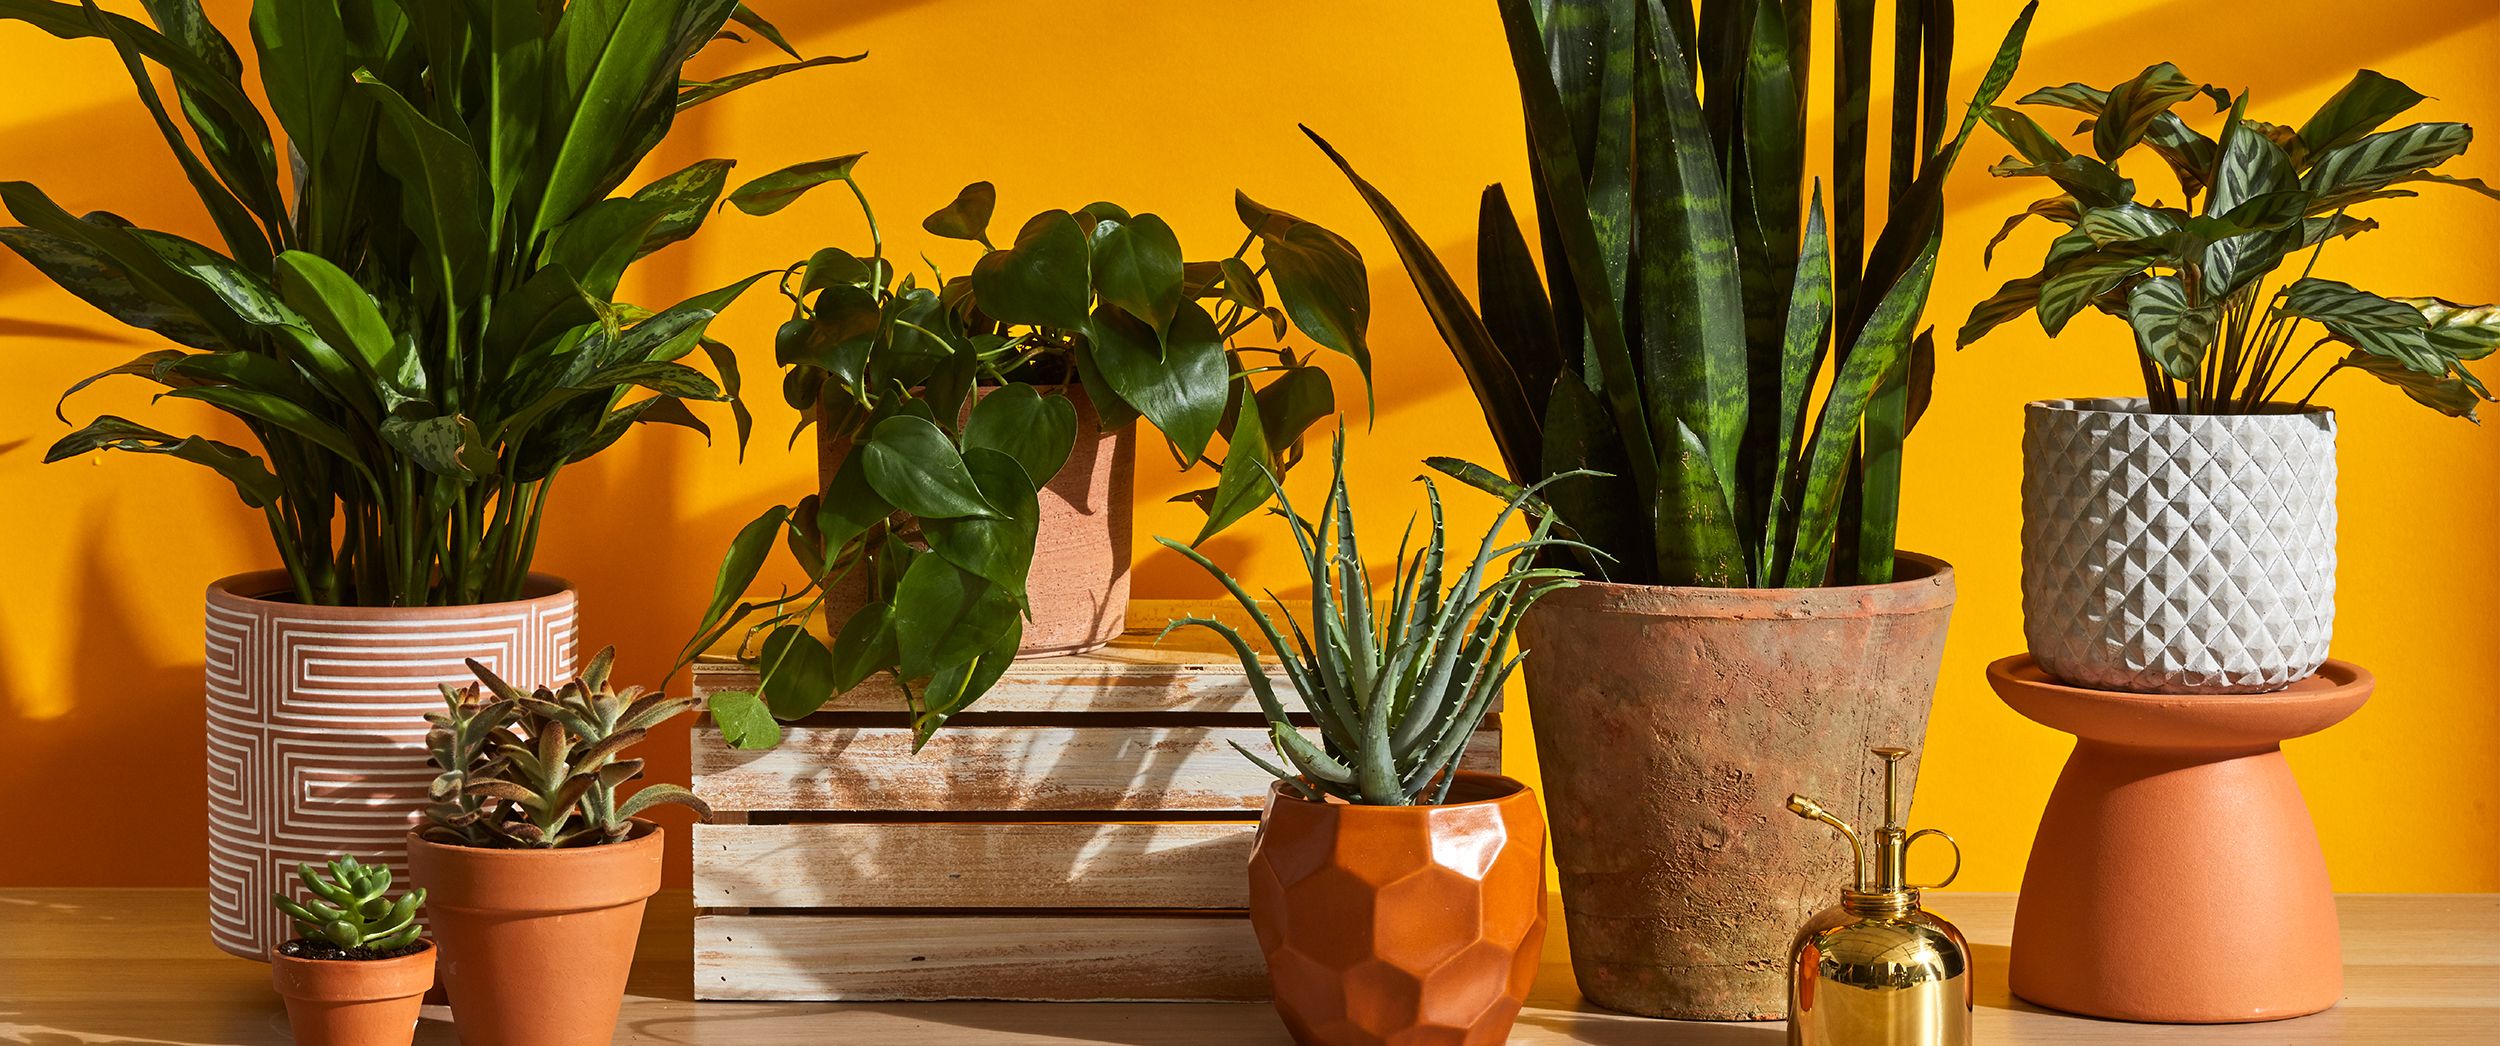 Best indoor plants – 10 top plants to grow at home